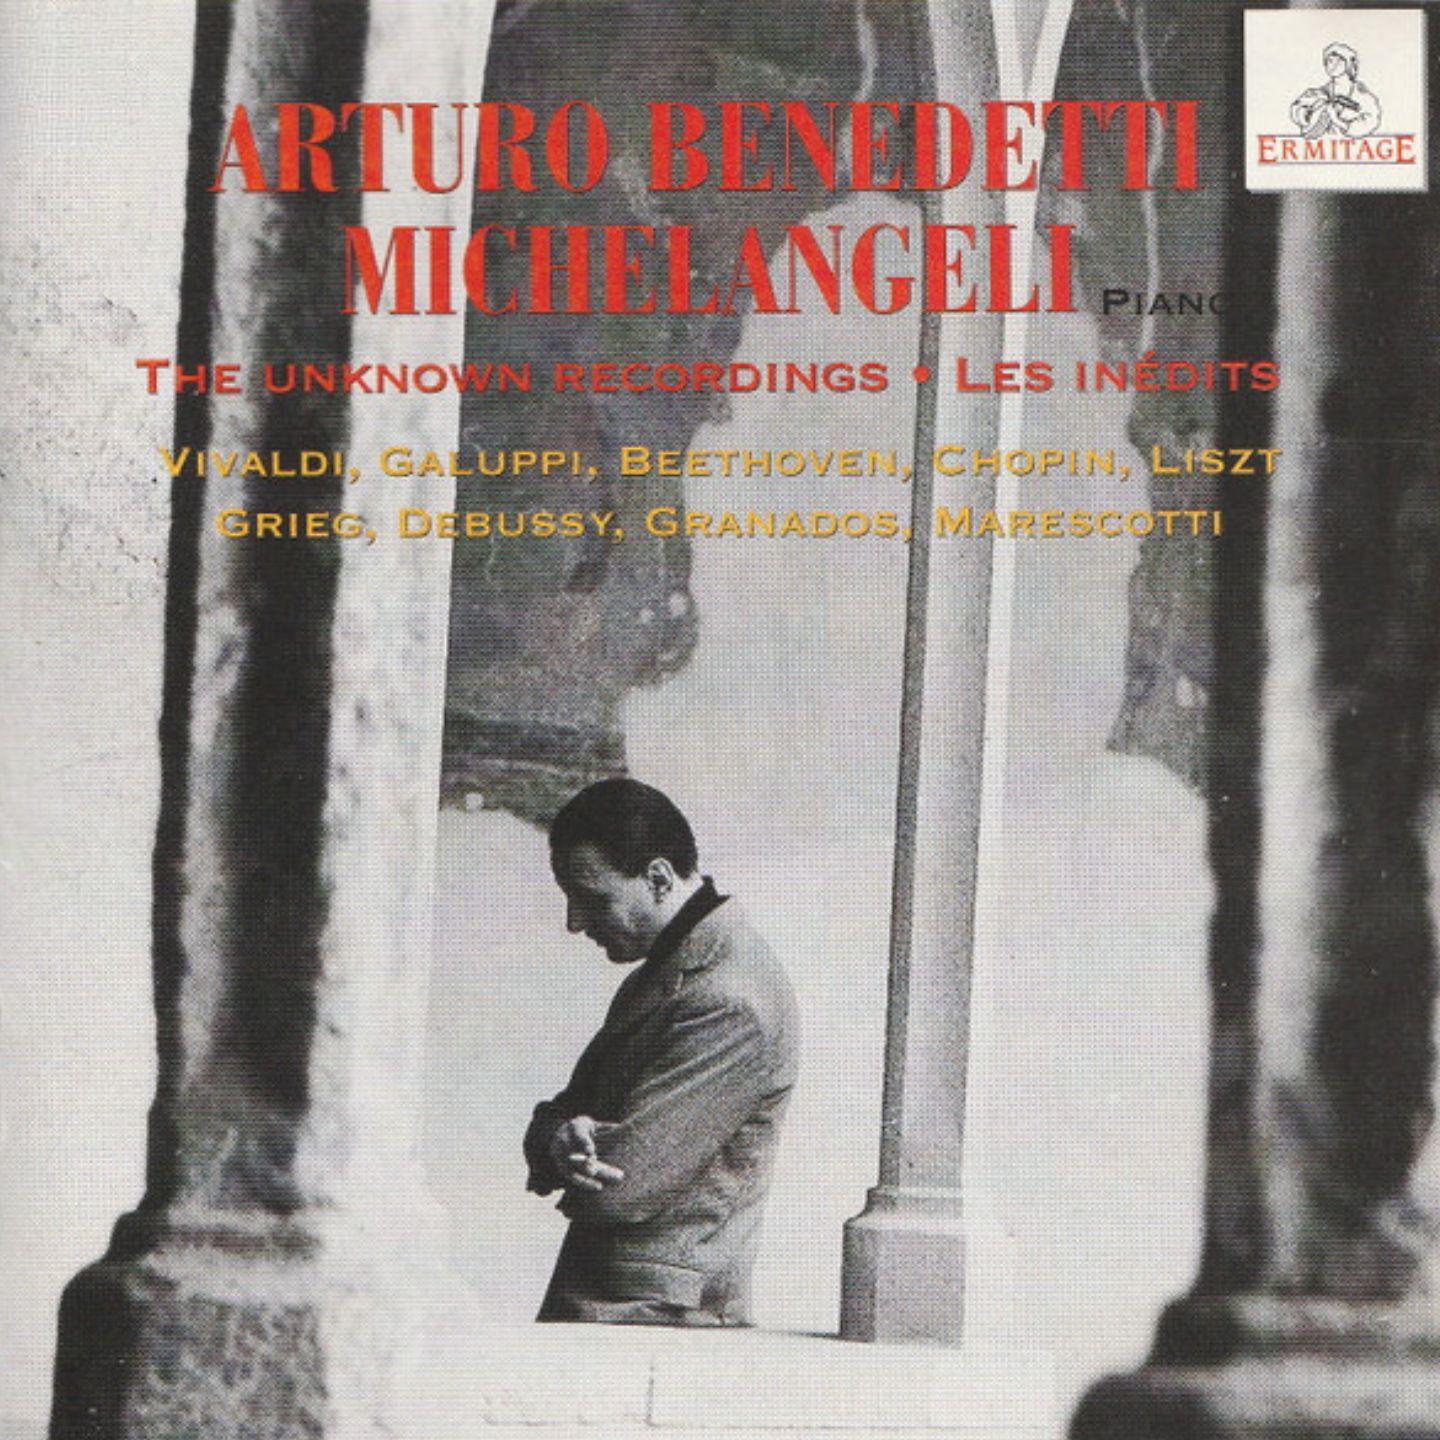 Arturo Benedetti Michelangeli - Piano Concerto No. 1 in E Flat Major, S. 124: III. Allegro marziale animato